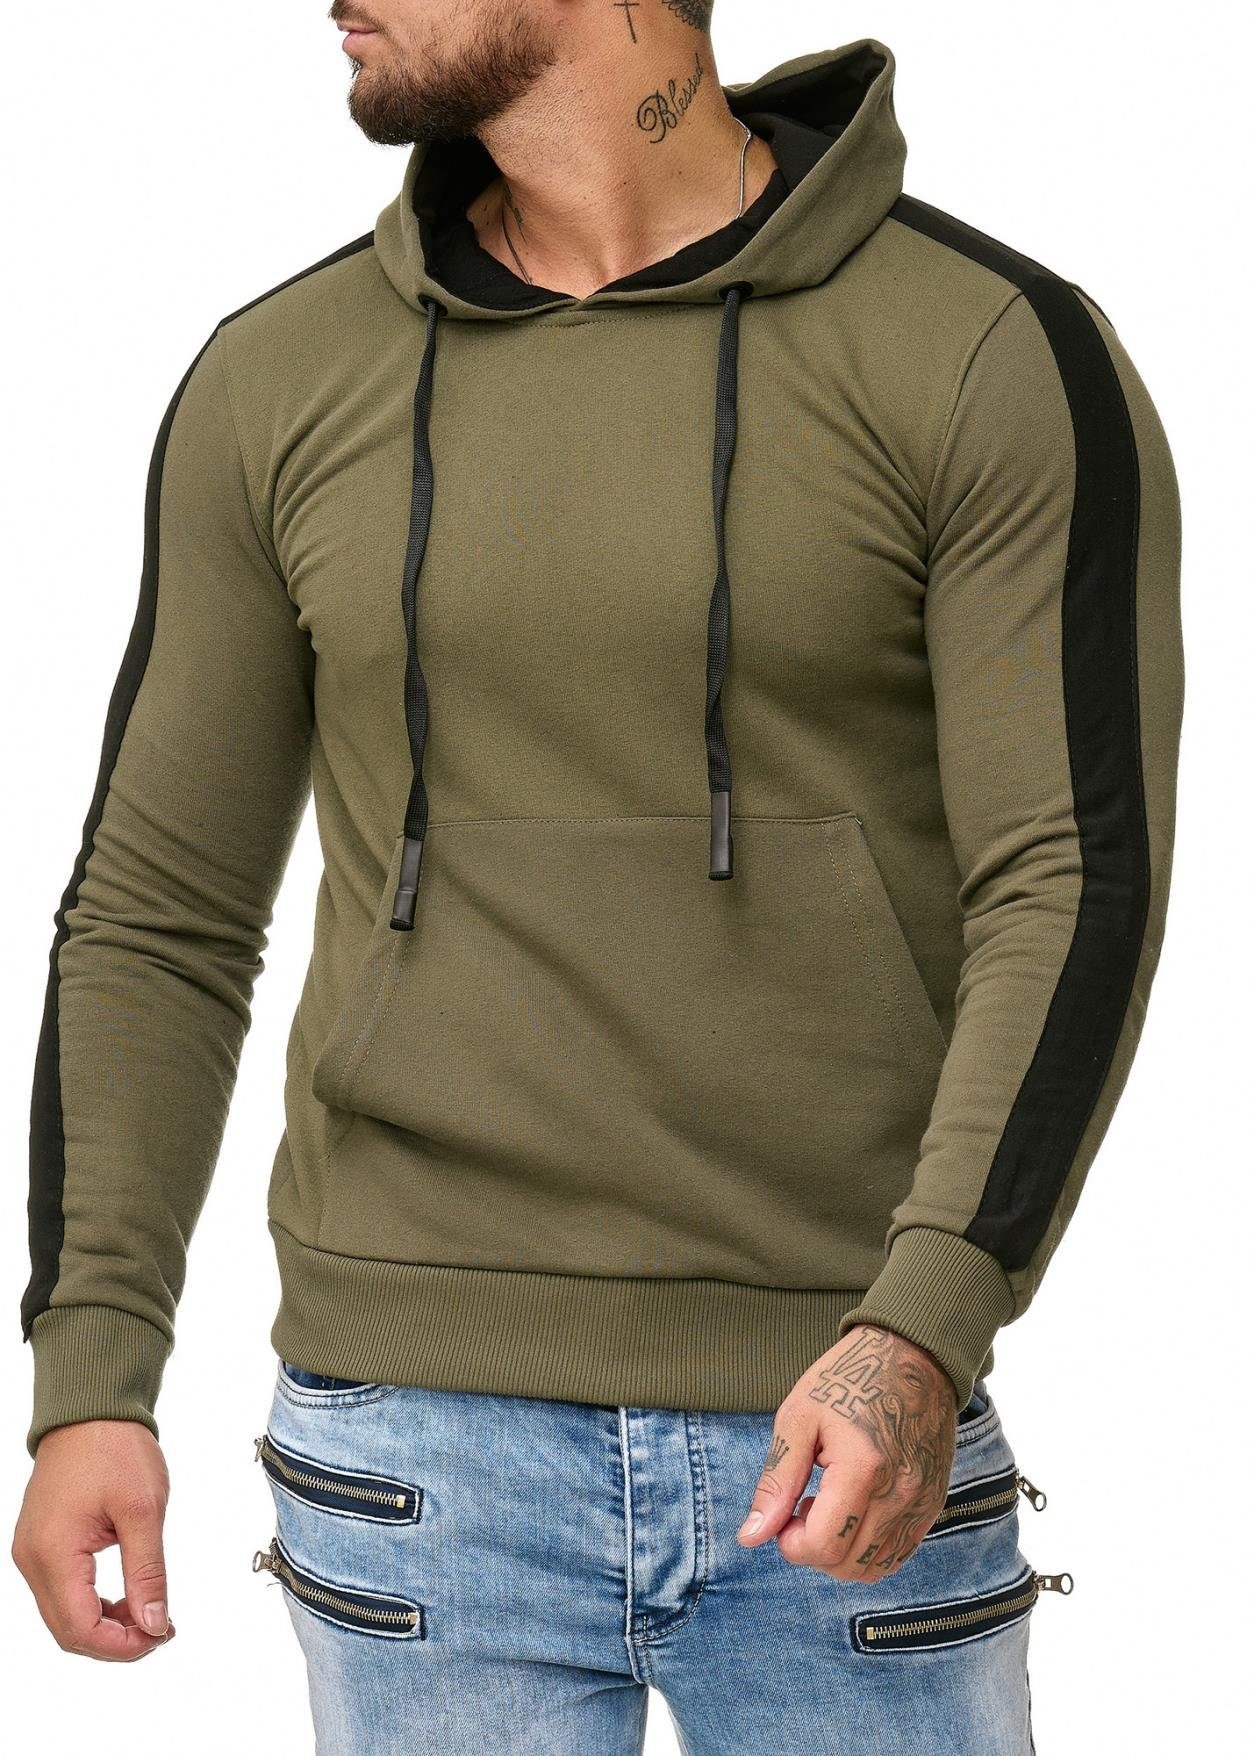 Modell Sweater, Pullover 1212 Hoodie Hoodie Code47 Casual (Hoodie Herren Kapuzenpullover Kapuzenpullover Sweatshirt 1-tlg) Code47 Grün Fitness Freizeit